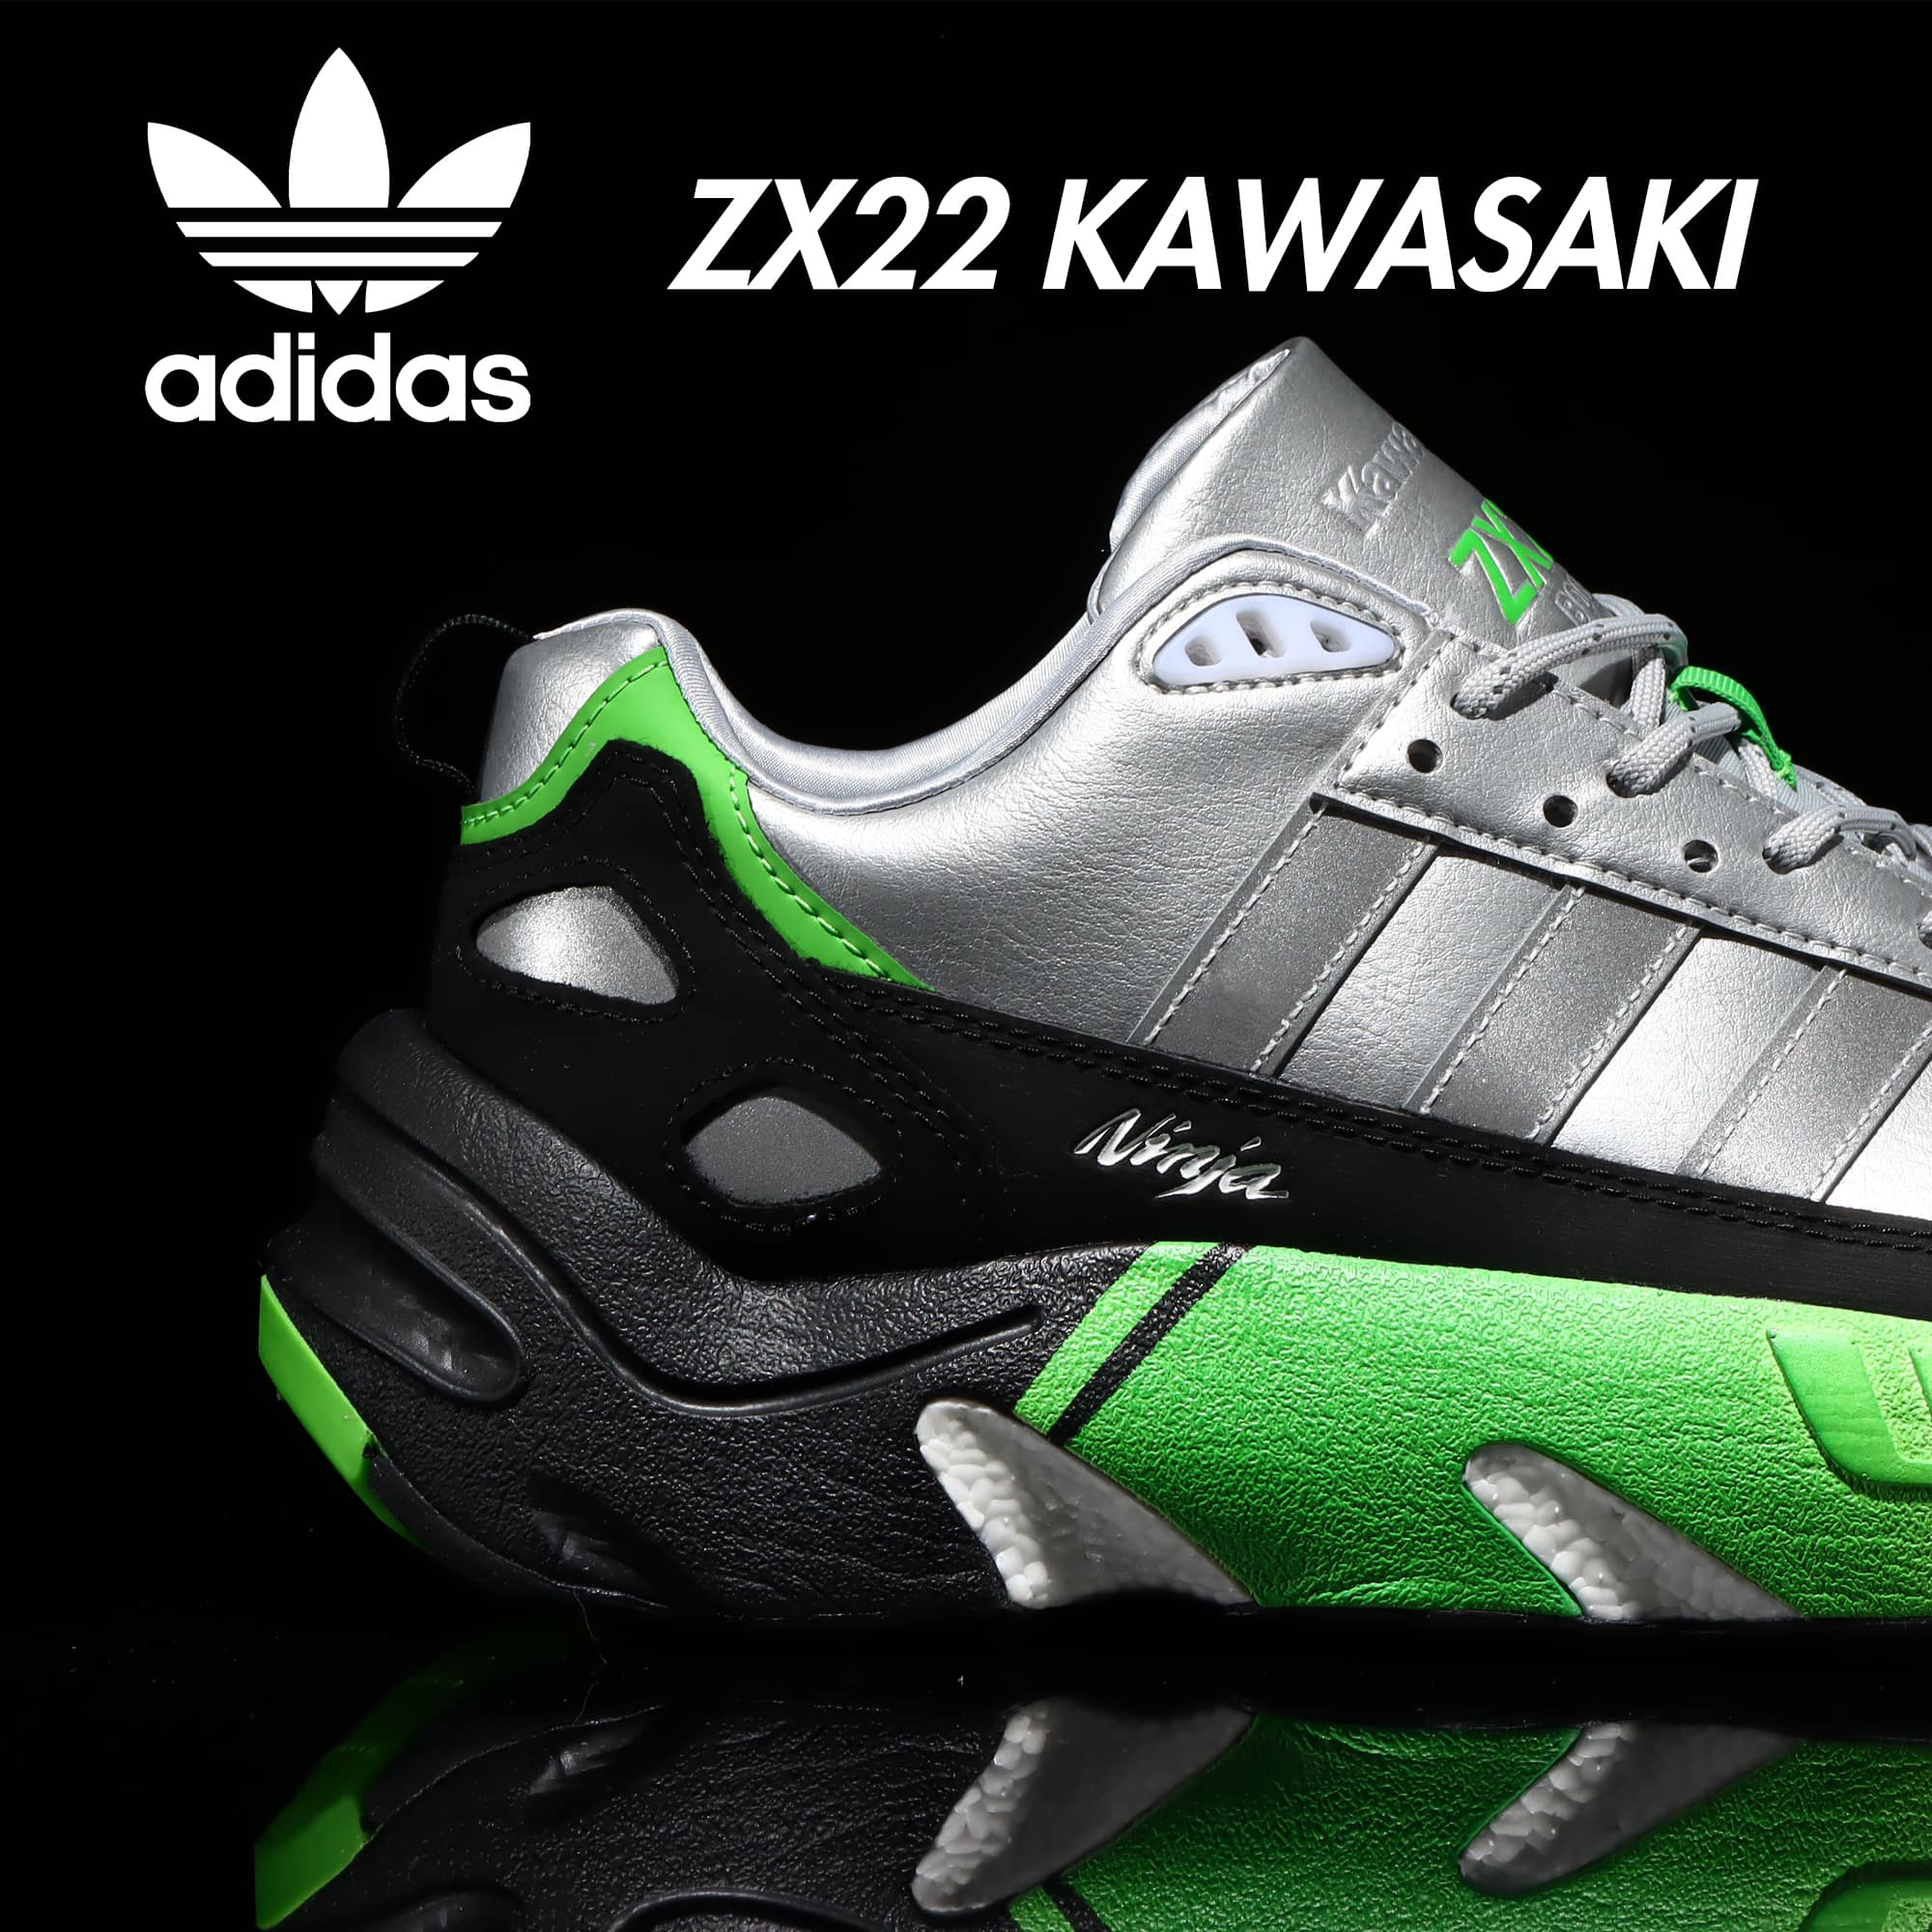 adidas ZX22 KAWASAKI